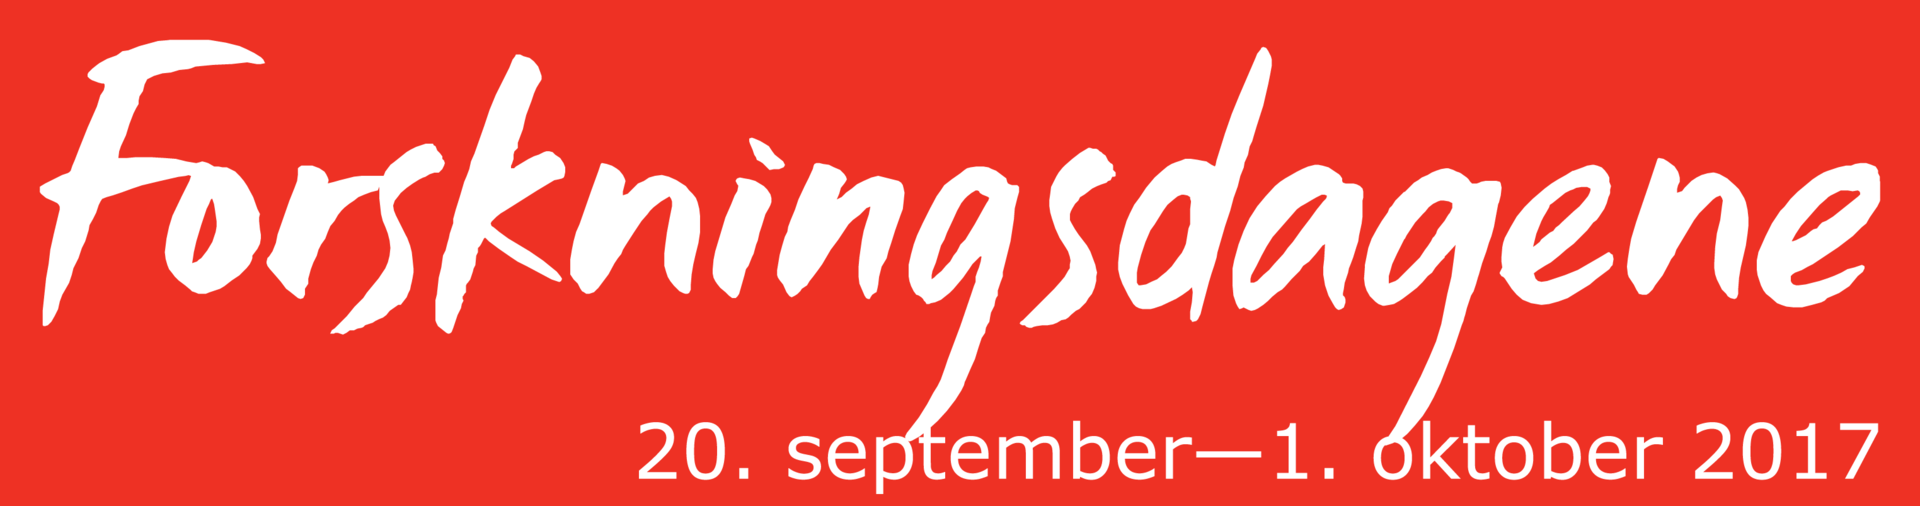 Logoen til Forskningsdagene med angitt datoer for perioden, 20. september til 1. oktober.